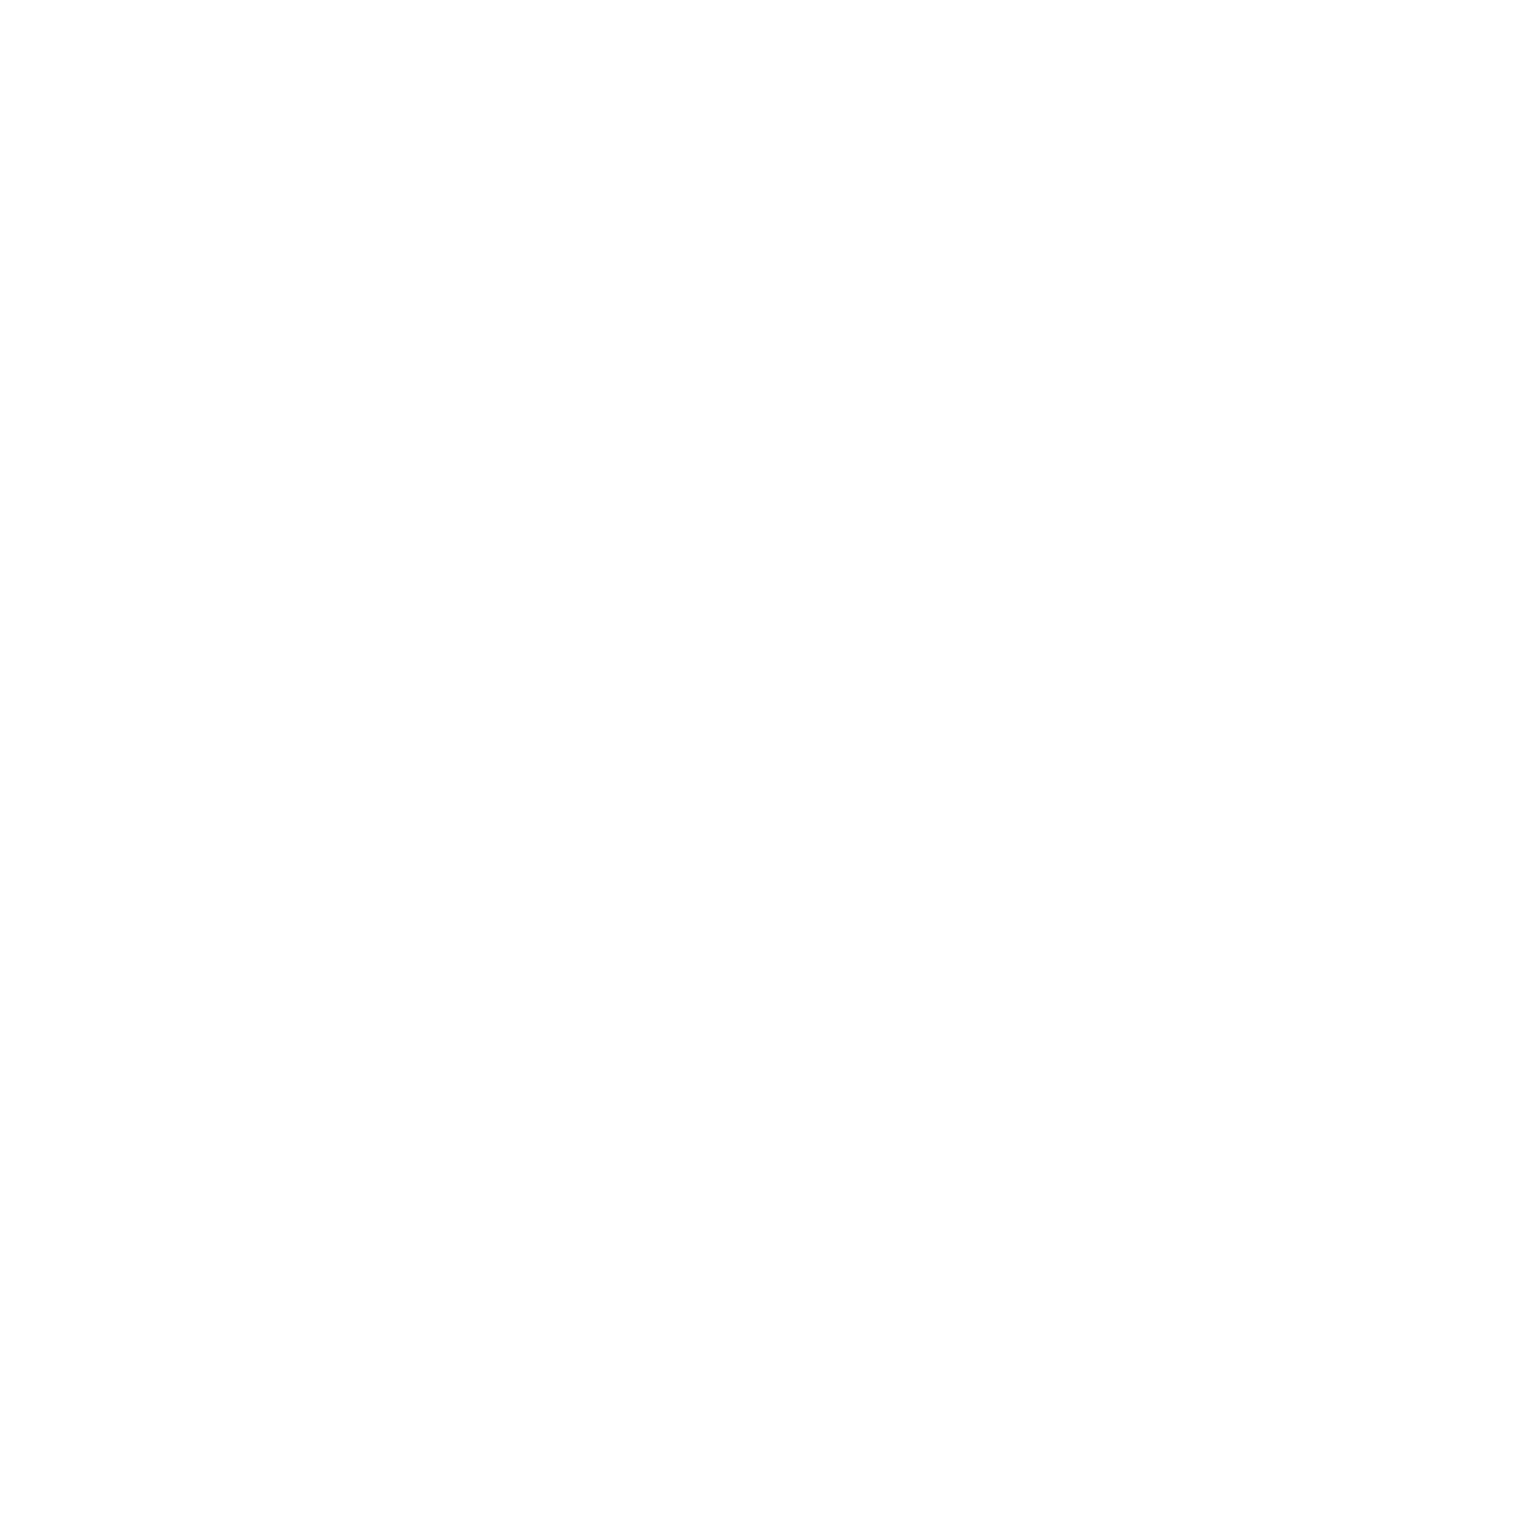 Acerinox logo large for dark backgrounds (transparent PNG)